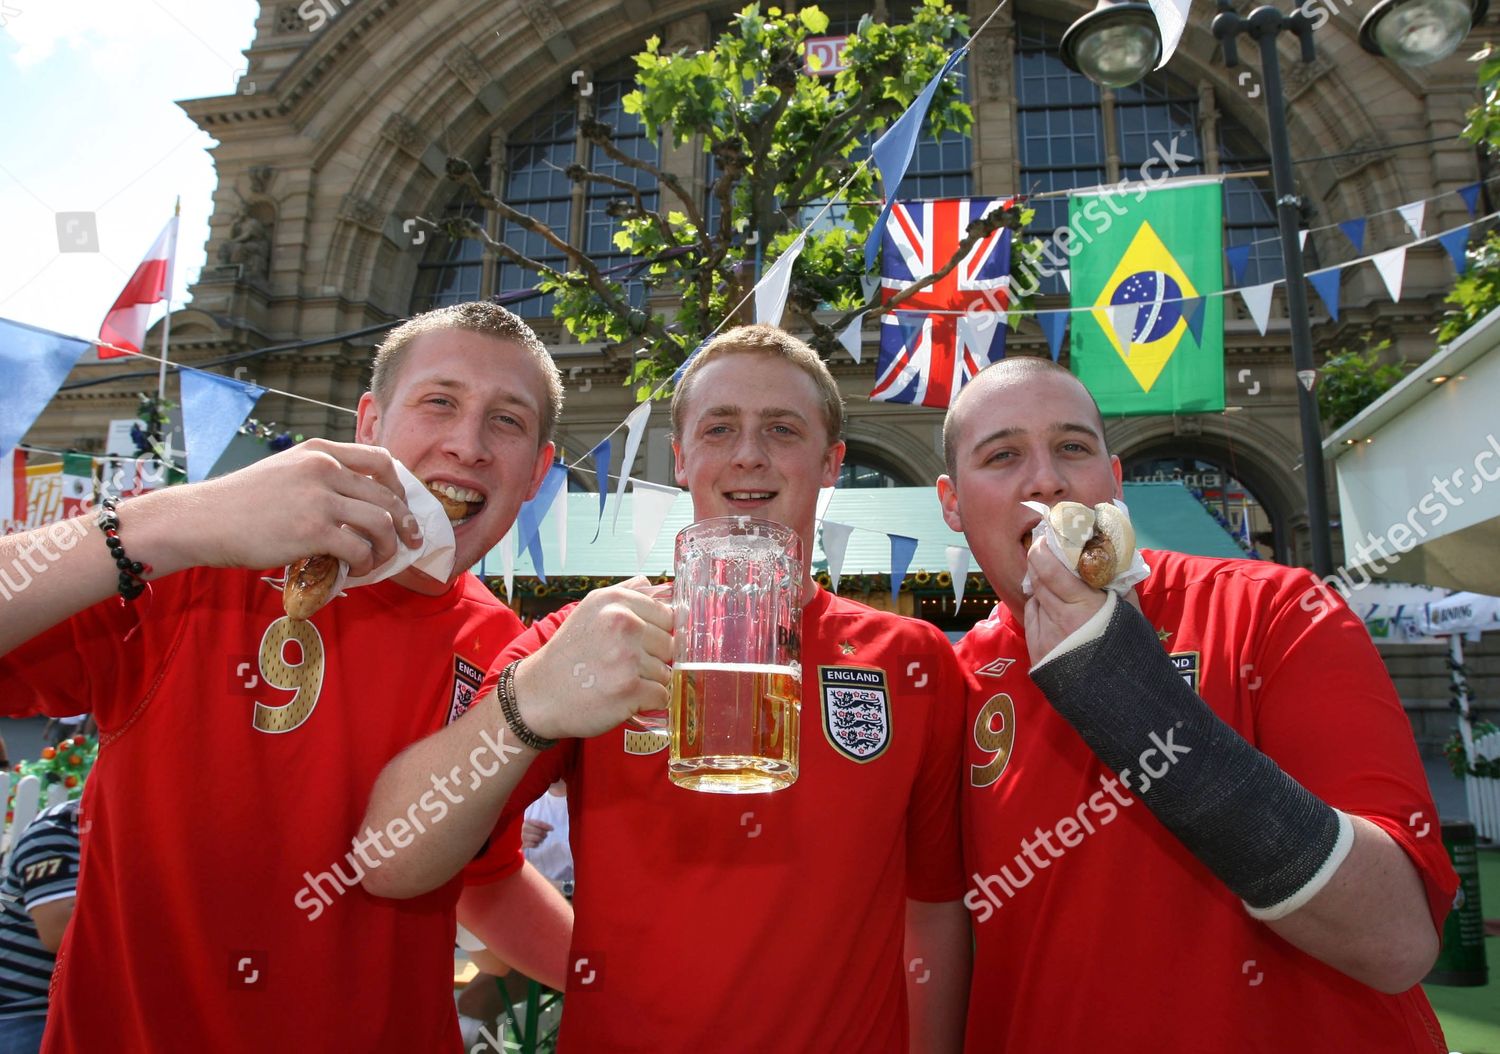 England Football Fans Bratwurst Beer Outside Hauptbahnhof Redaktionelles Stockfoto Stockbild Shutterstock